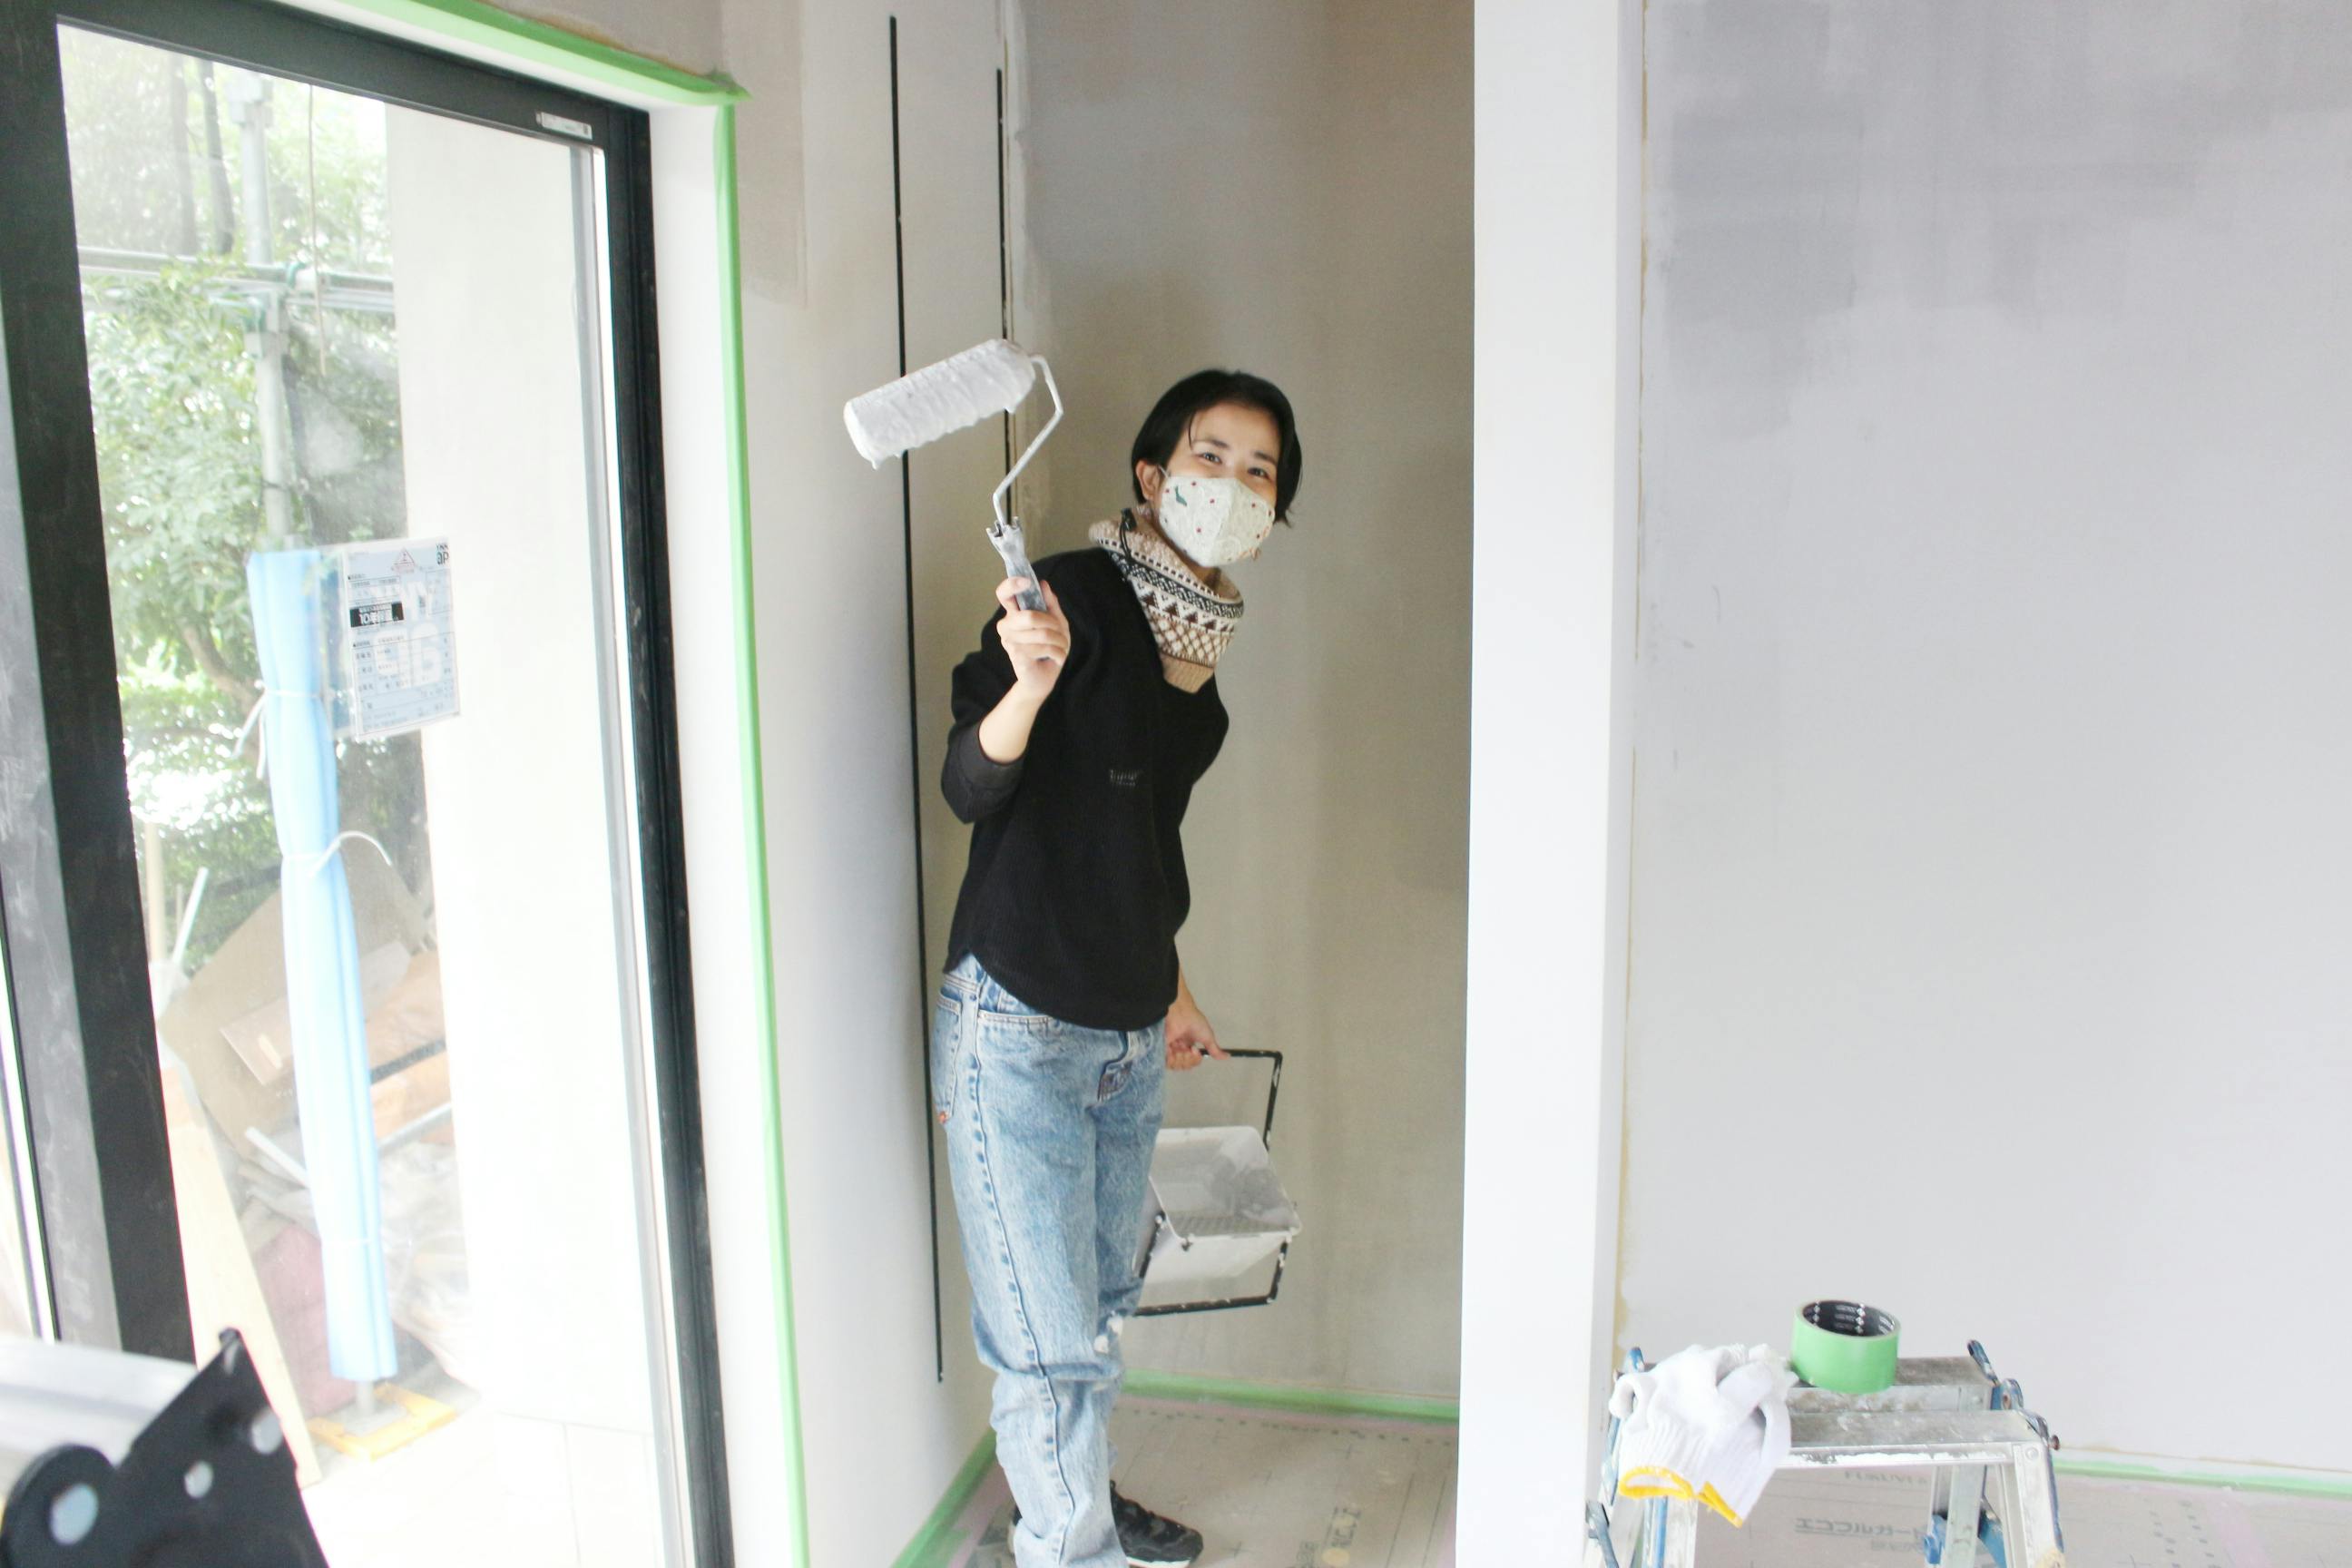 壁塗り風景。壁塗りの道具を持ったAFRICL沖田